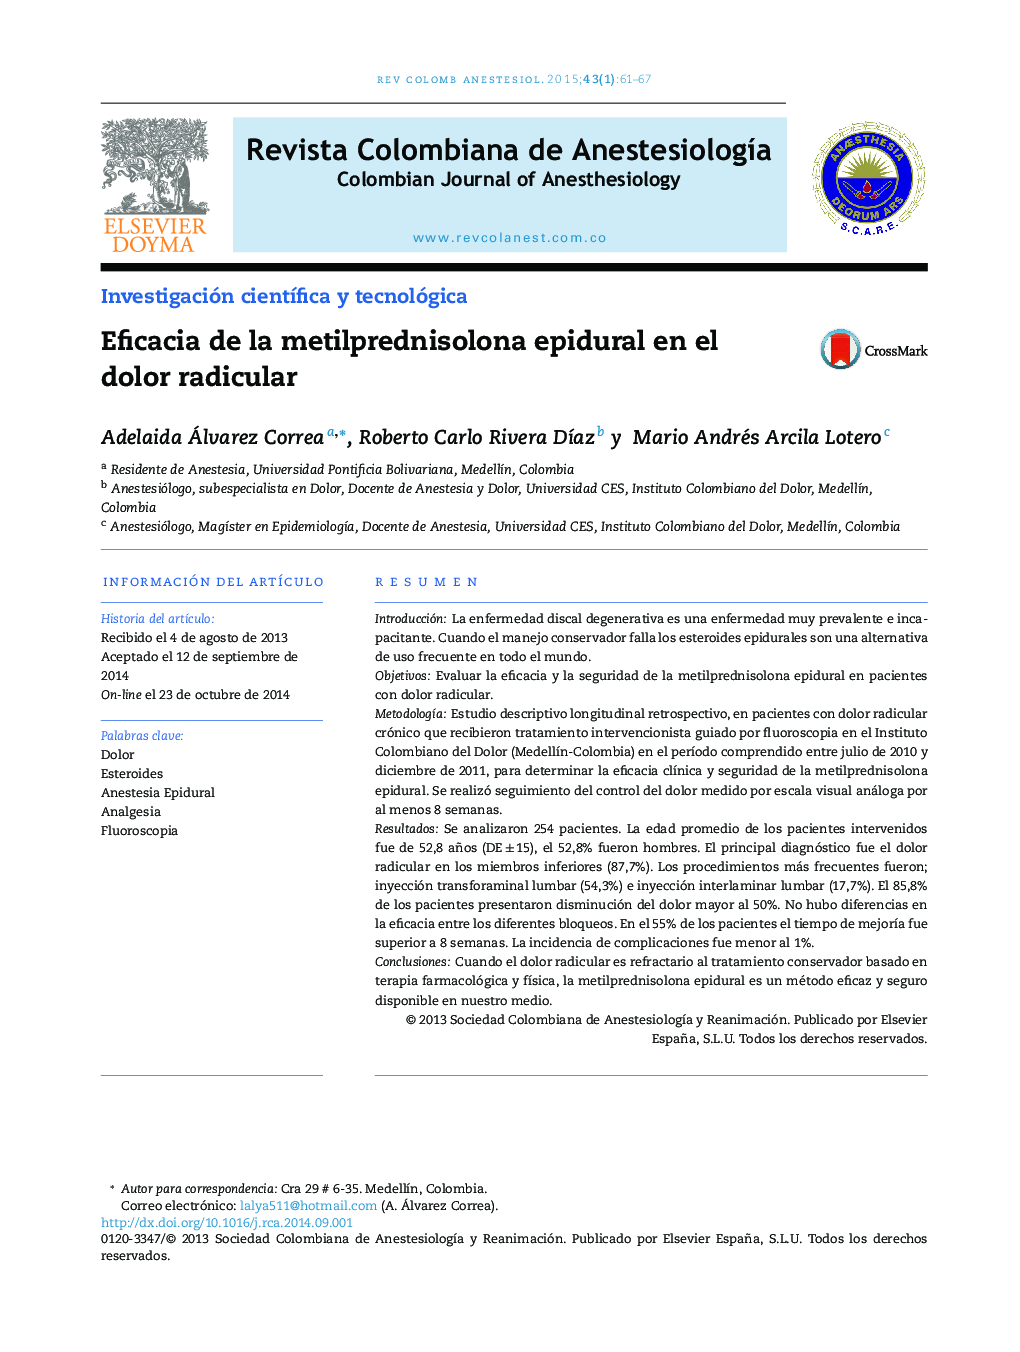 Eficacia de la metilprednisolona epidural en el dolor radicular